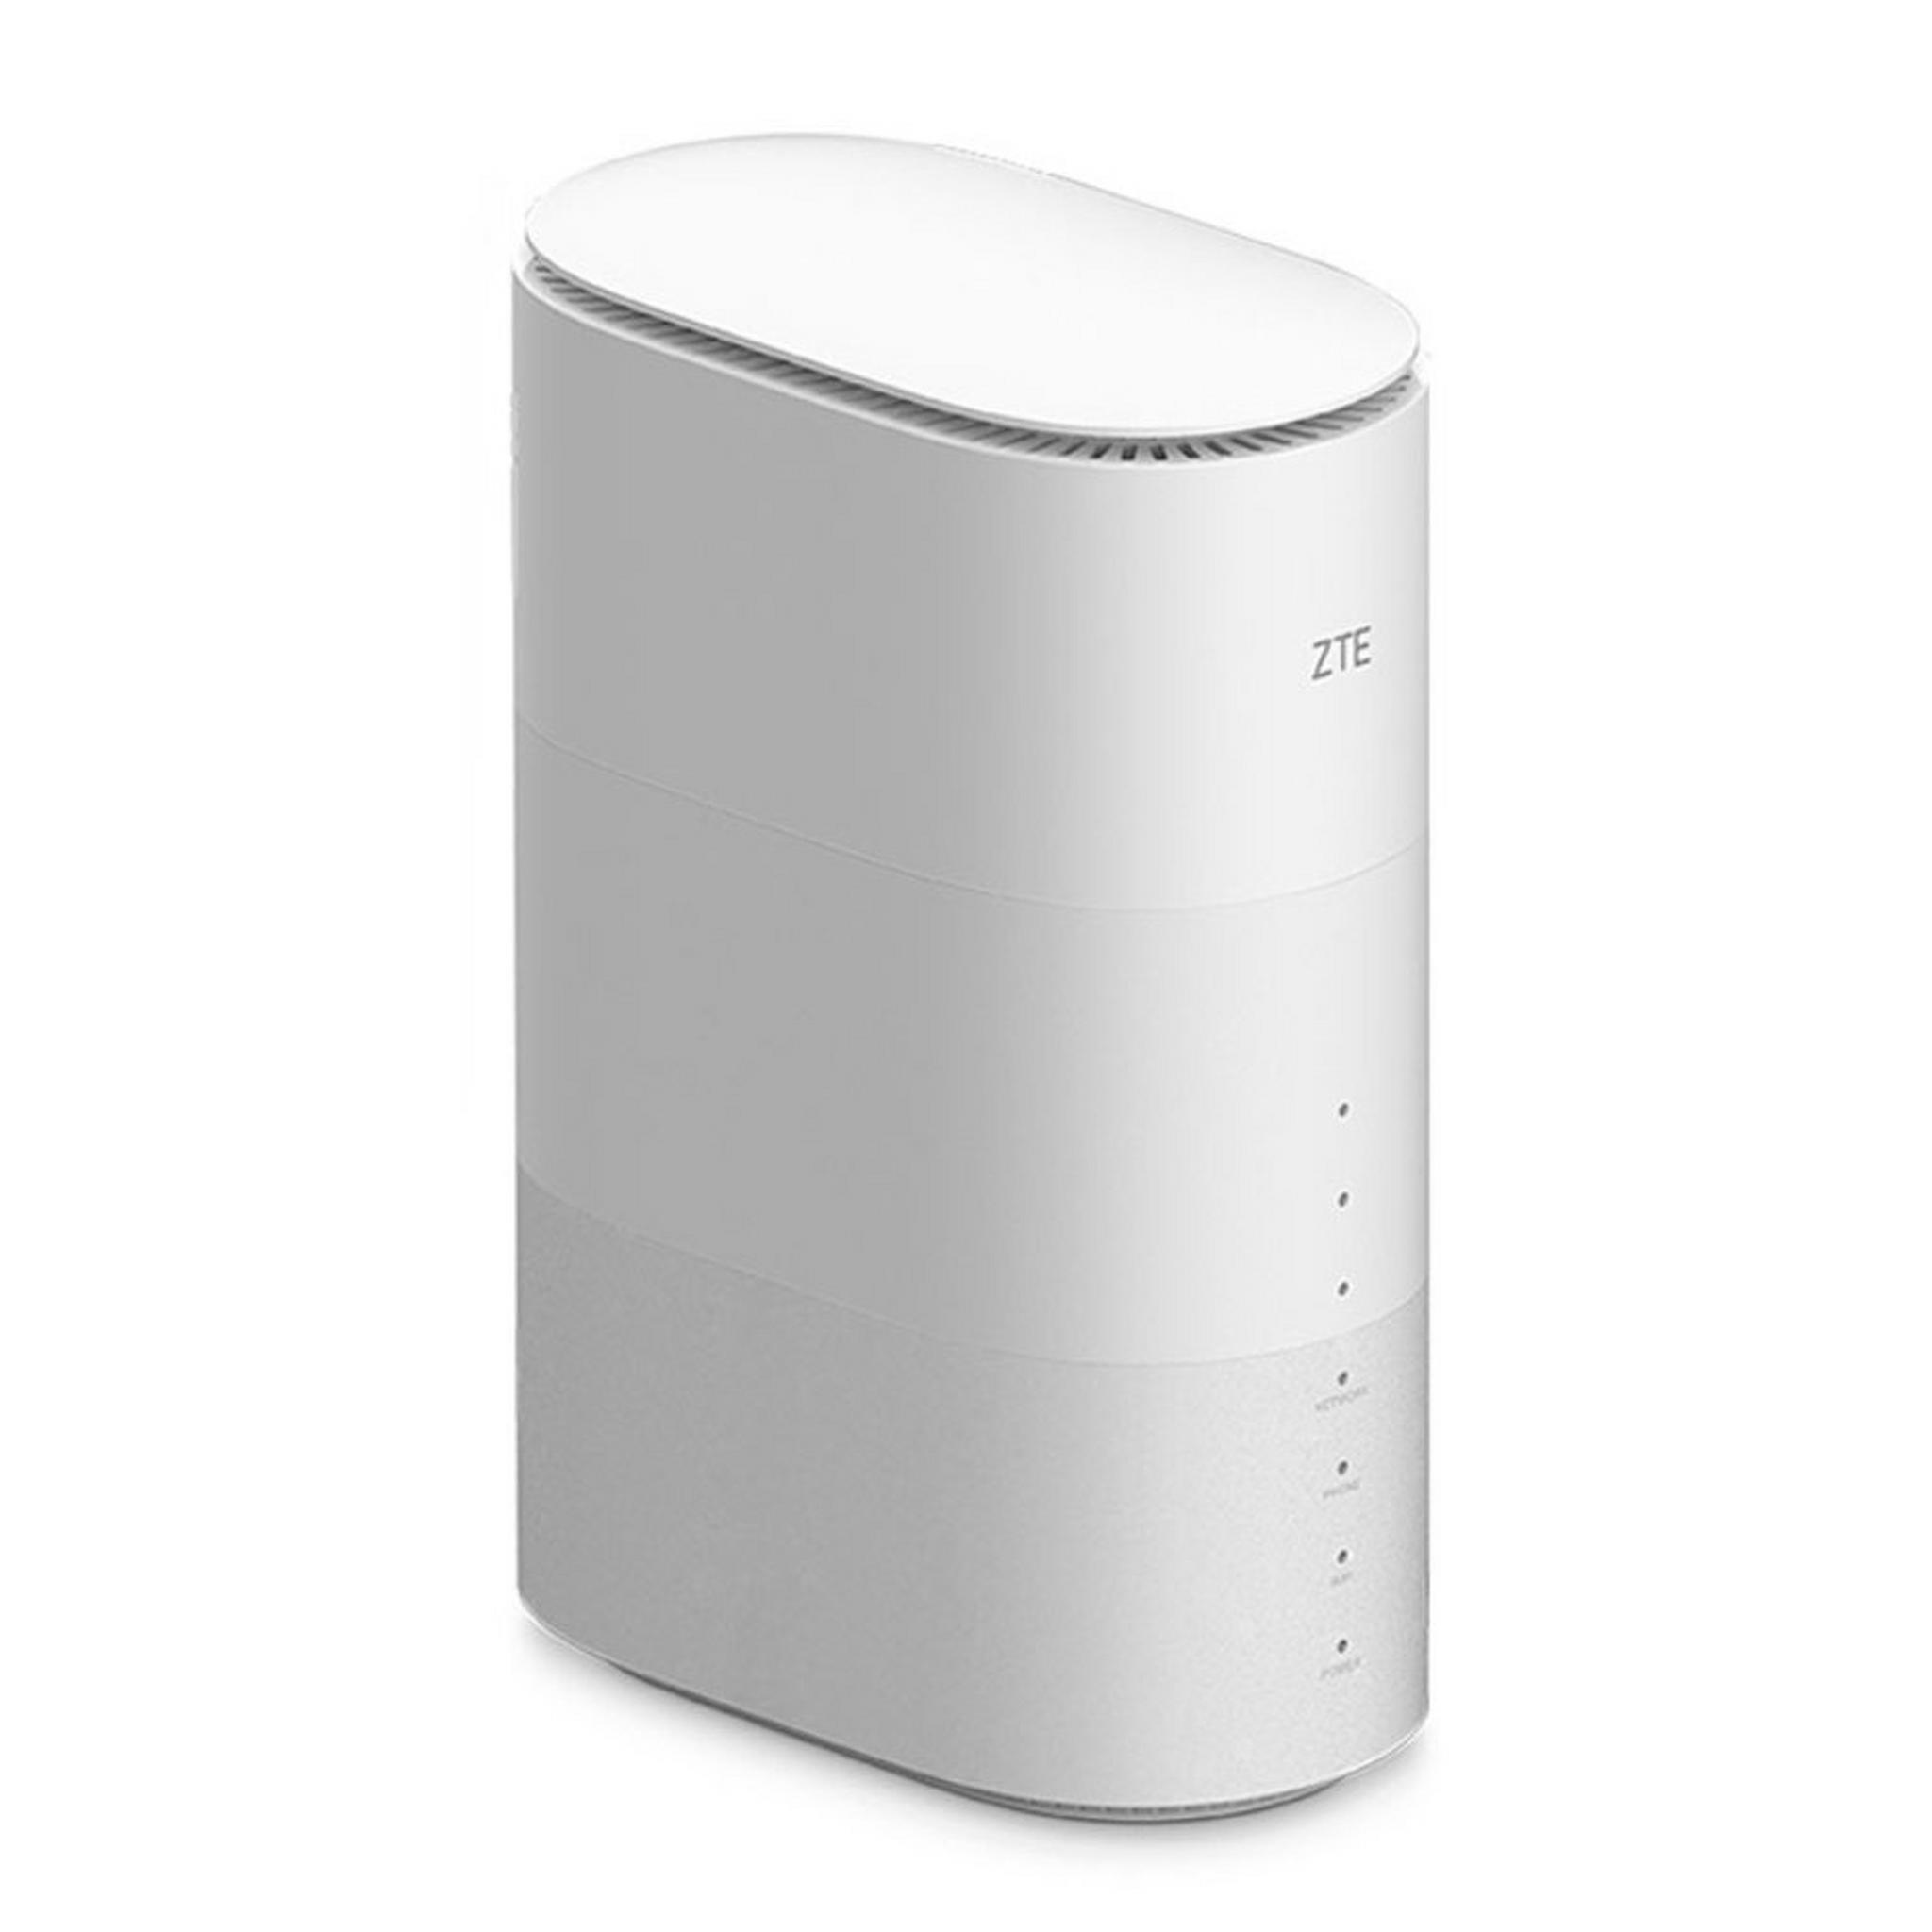 ZTE 5G Wireless Router - White